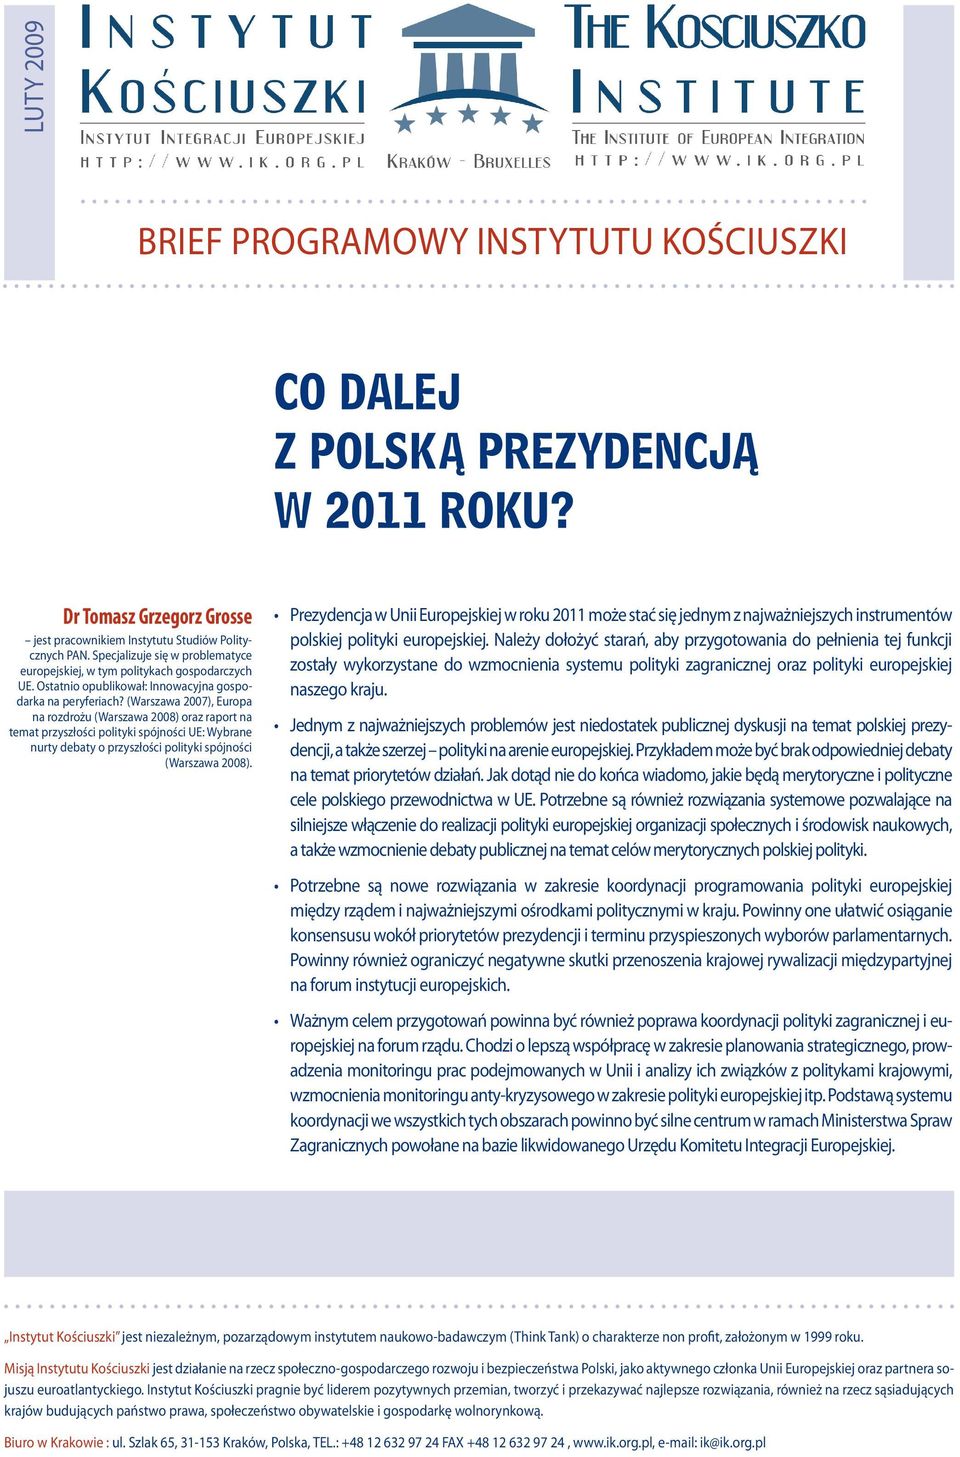 (Warszawa 2007), Europa na rozdrożu (Warszawa 2008) oraz raport na temat przyszłości polityki spójności UE: Wybrane nurty debaty o przyszłości polityki spójności (Warszawa 2008).